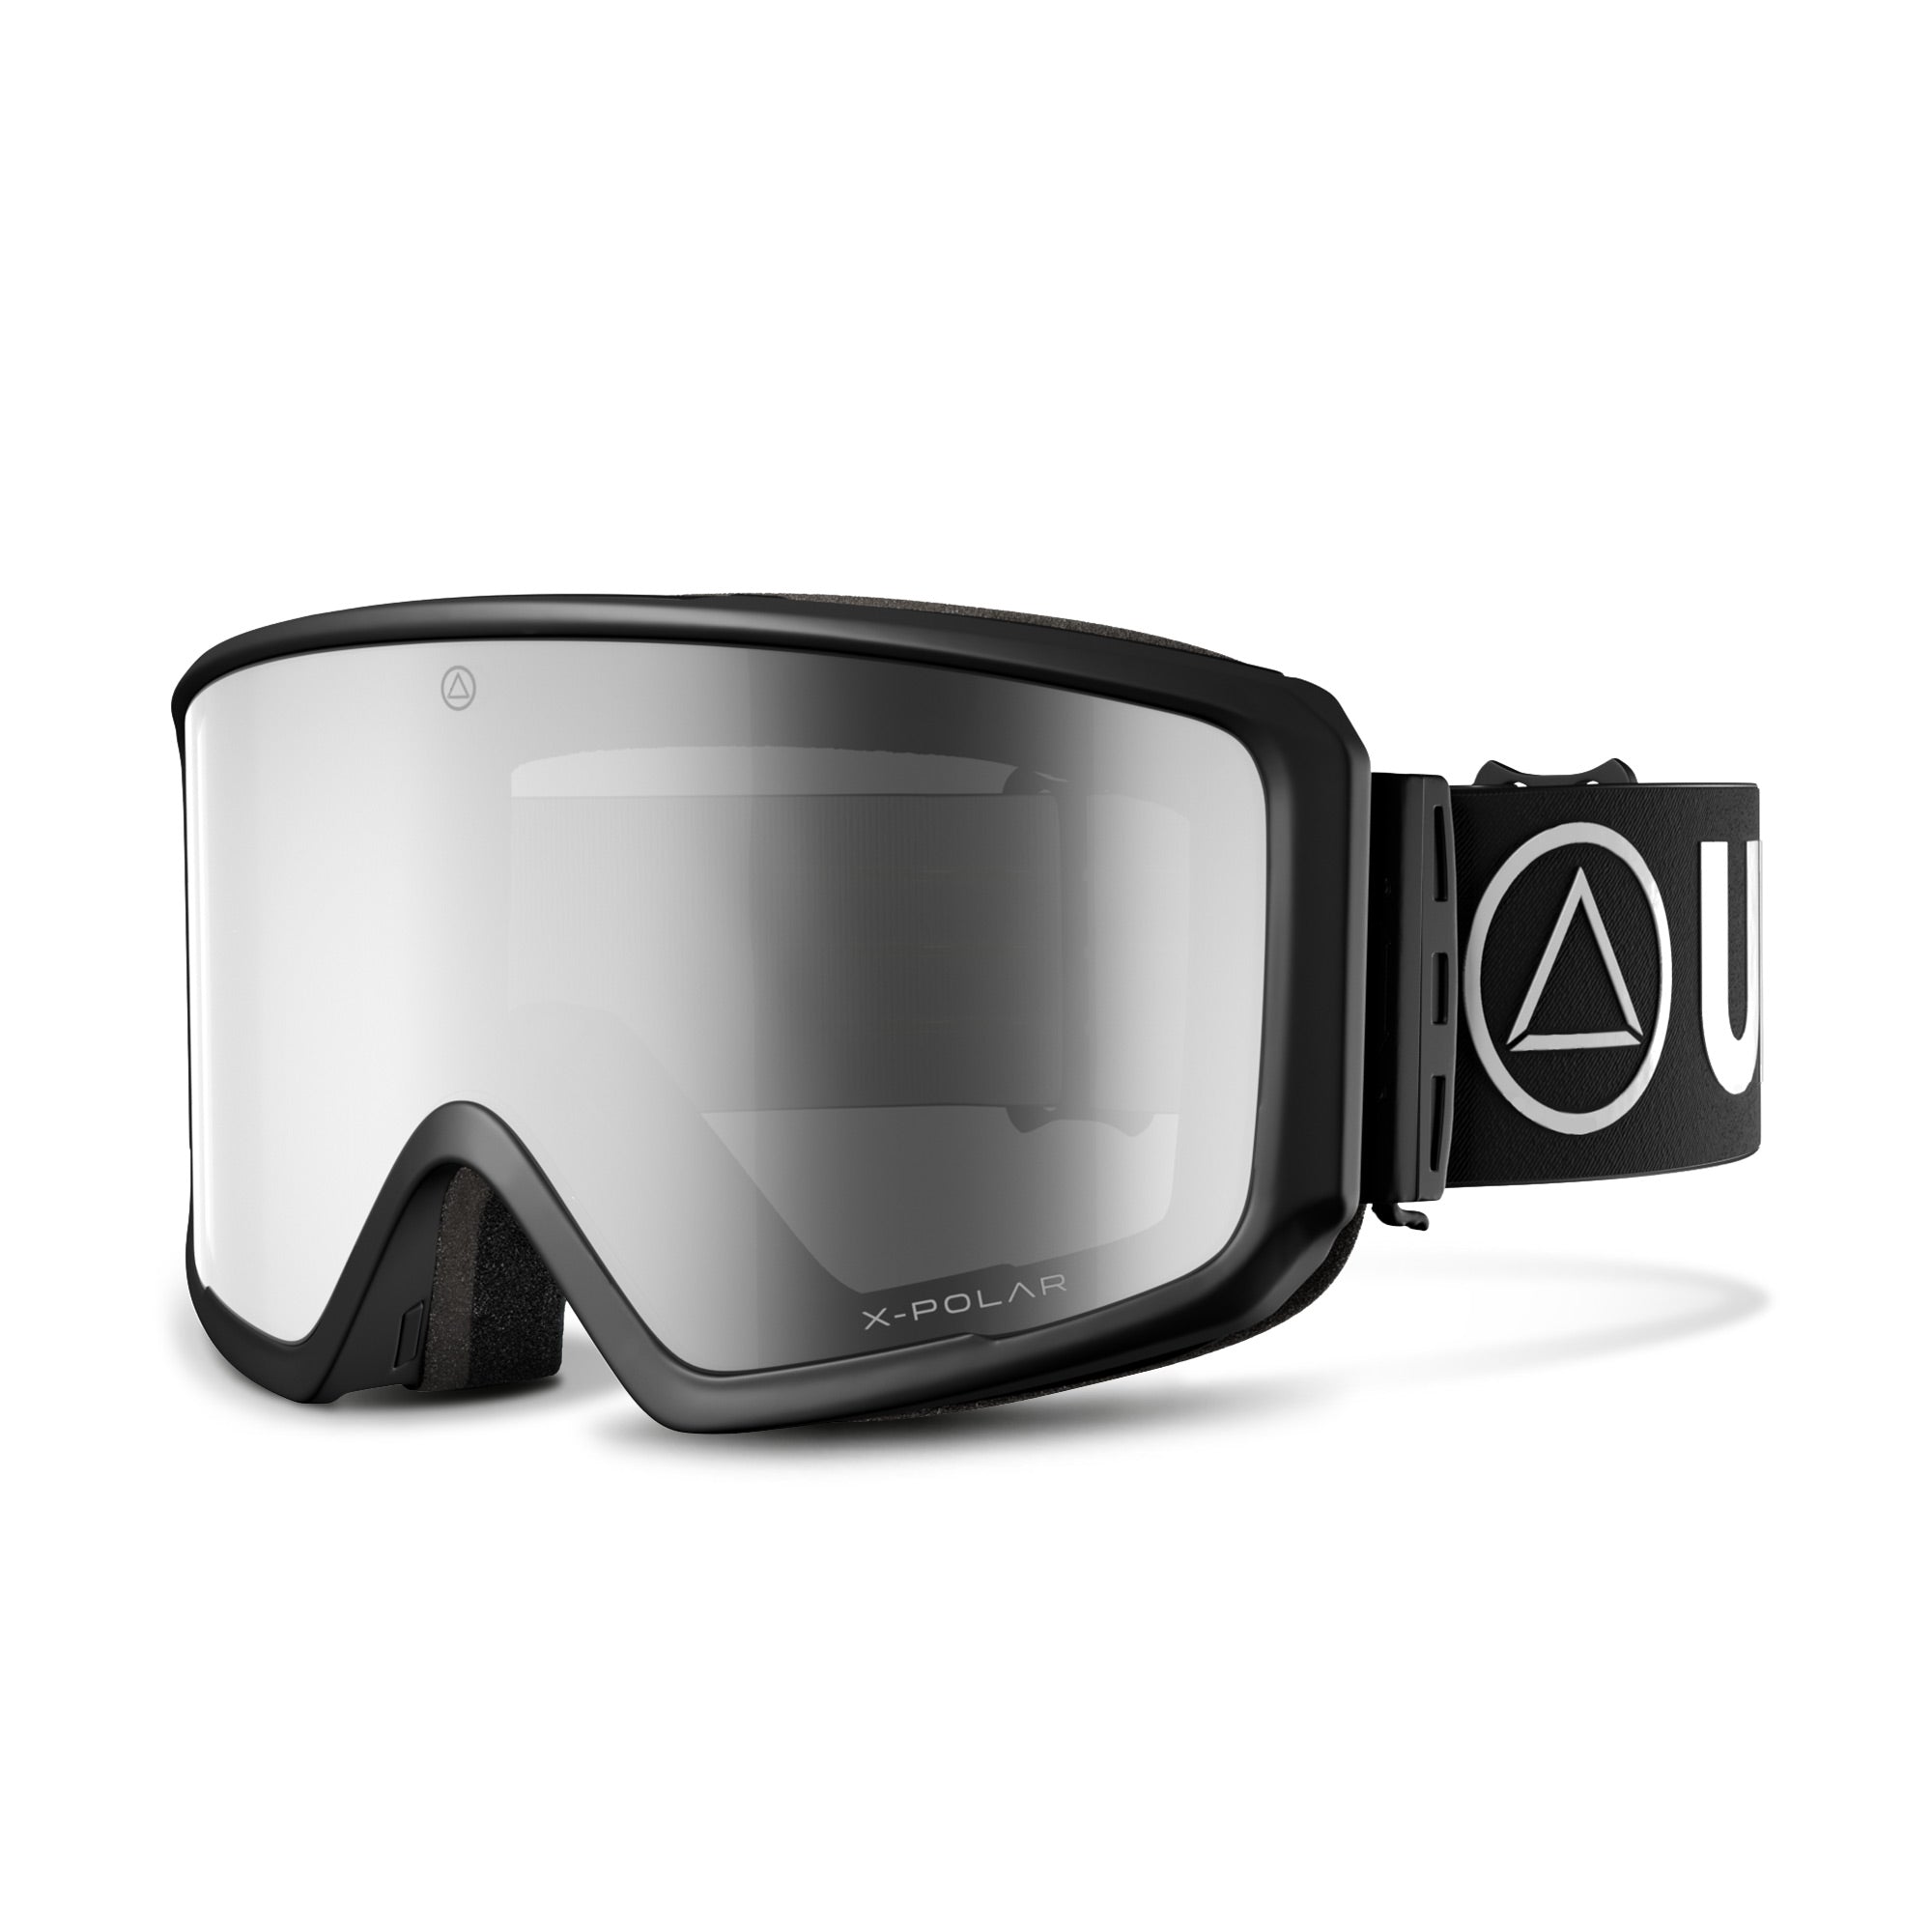 Gafas de esqui y Snowboard Uller The Wall Negro para hombre y mujer con lentes magnéticas intercambiables